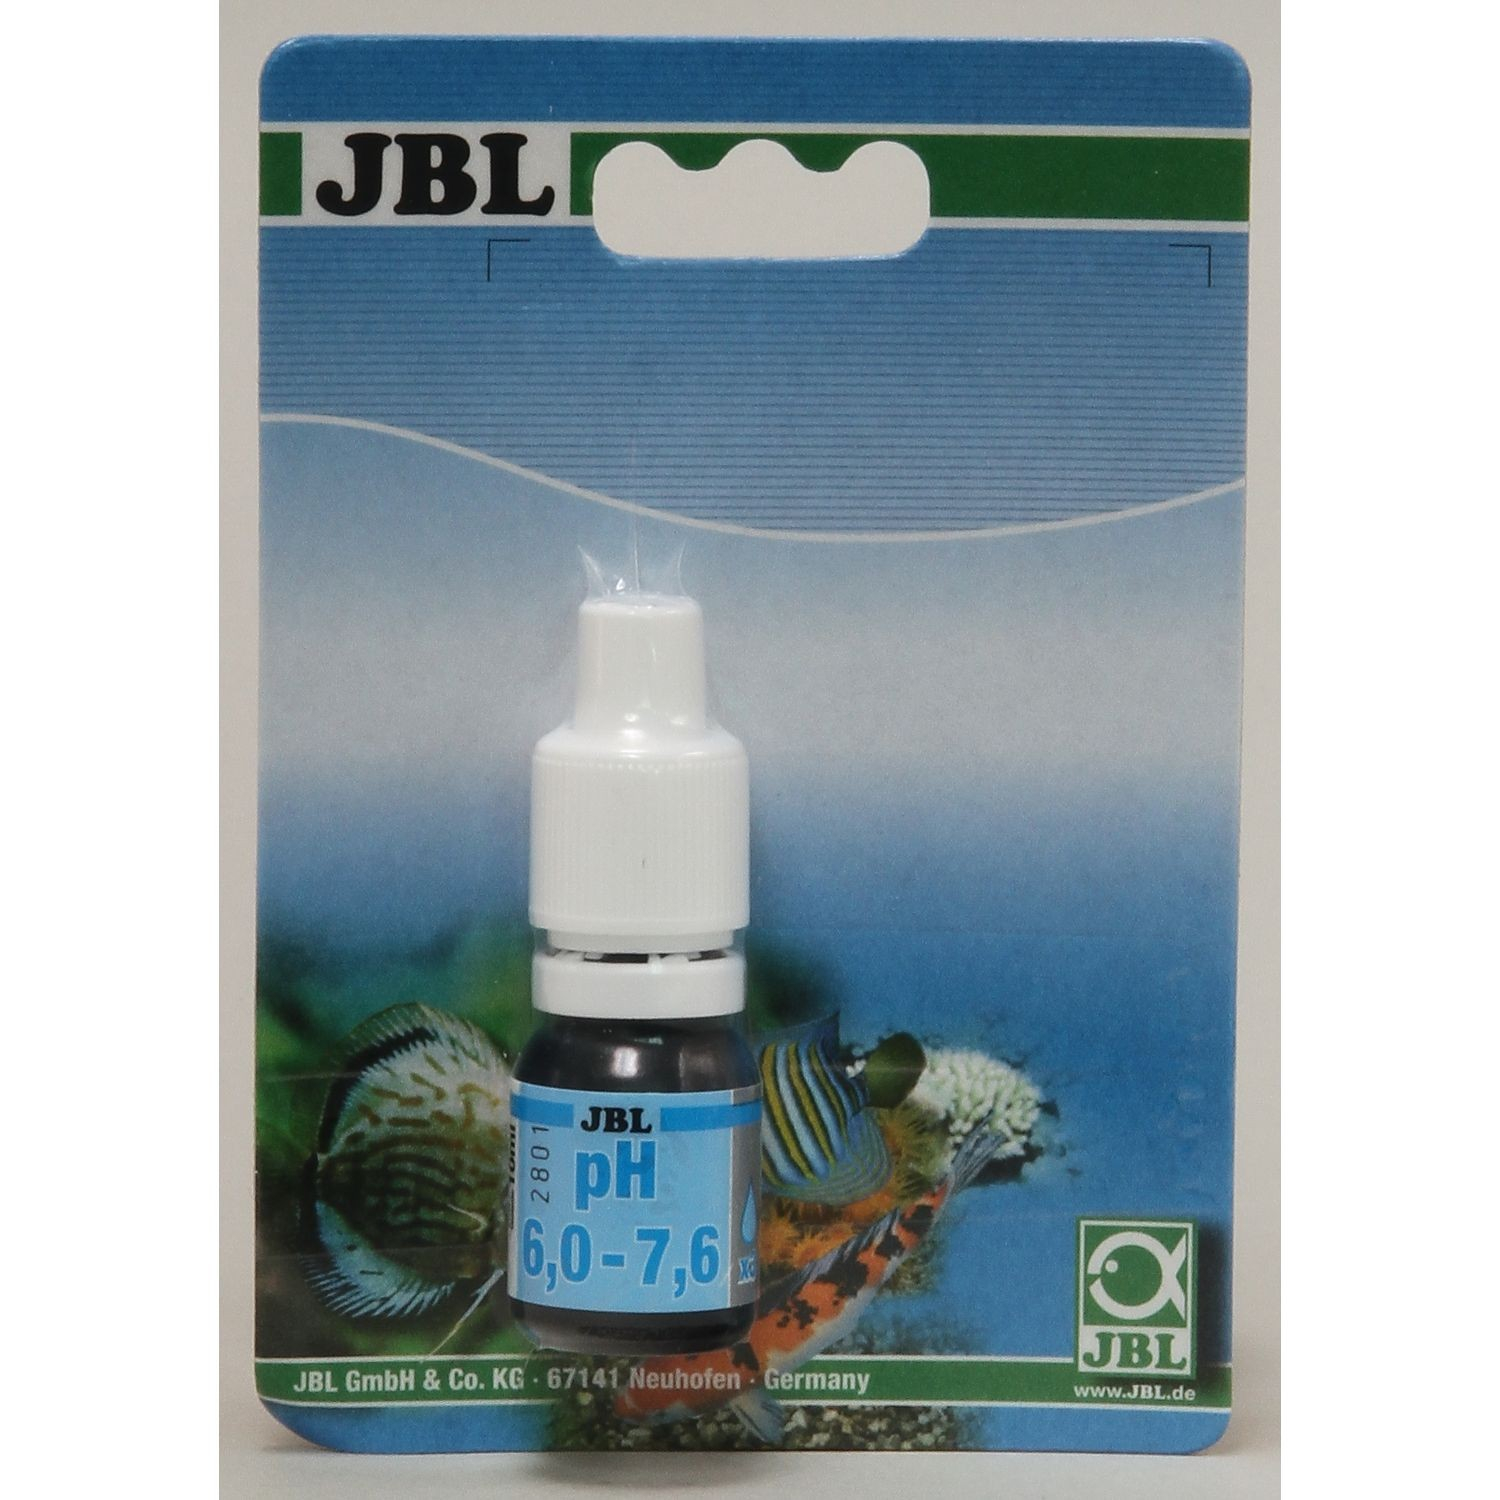 JBL pH Test da 6.0 a 7.6 per acquari di acqua dolce